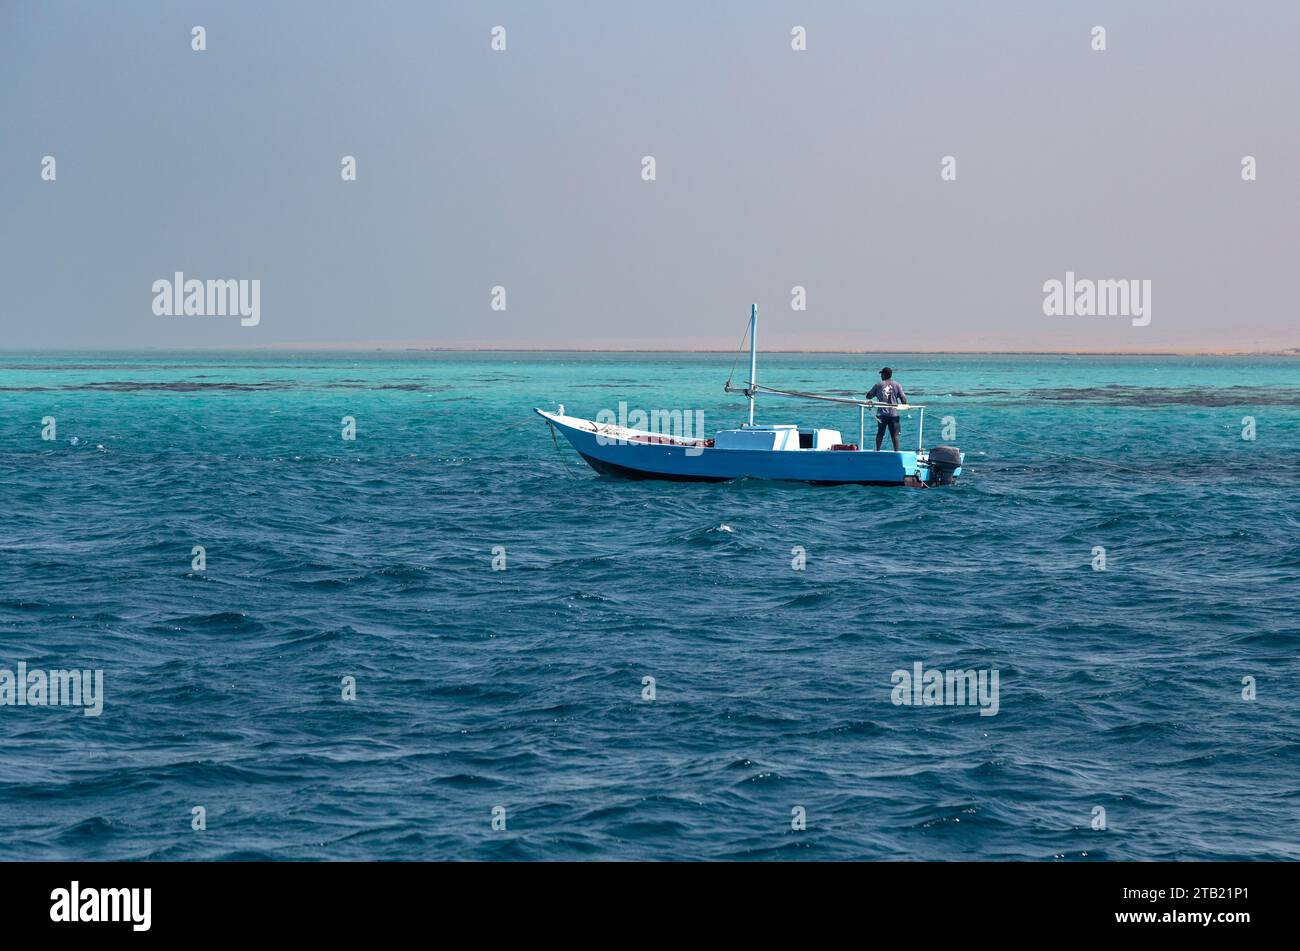 Pêcheur sur un petit bateau bleu, naviguant dans les eaux bleues claires Banque D'Images